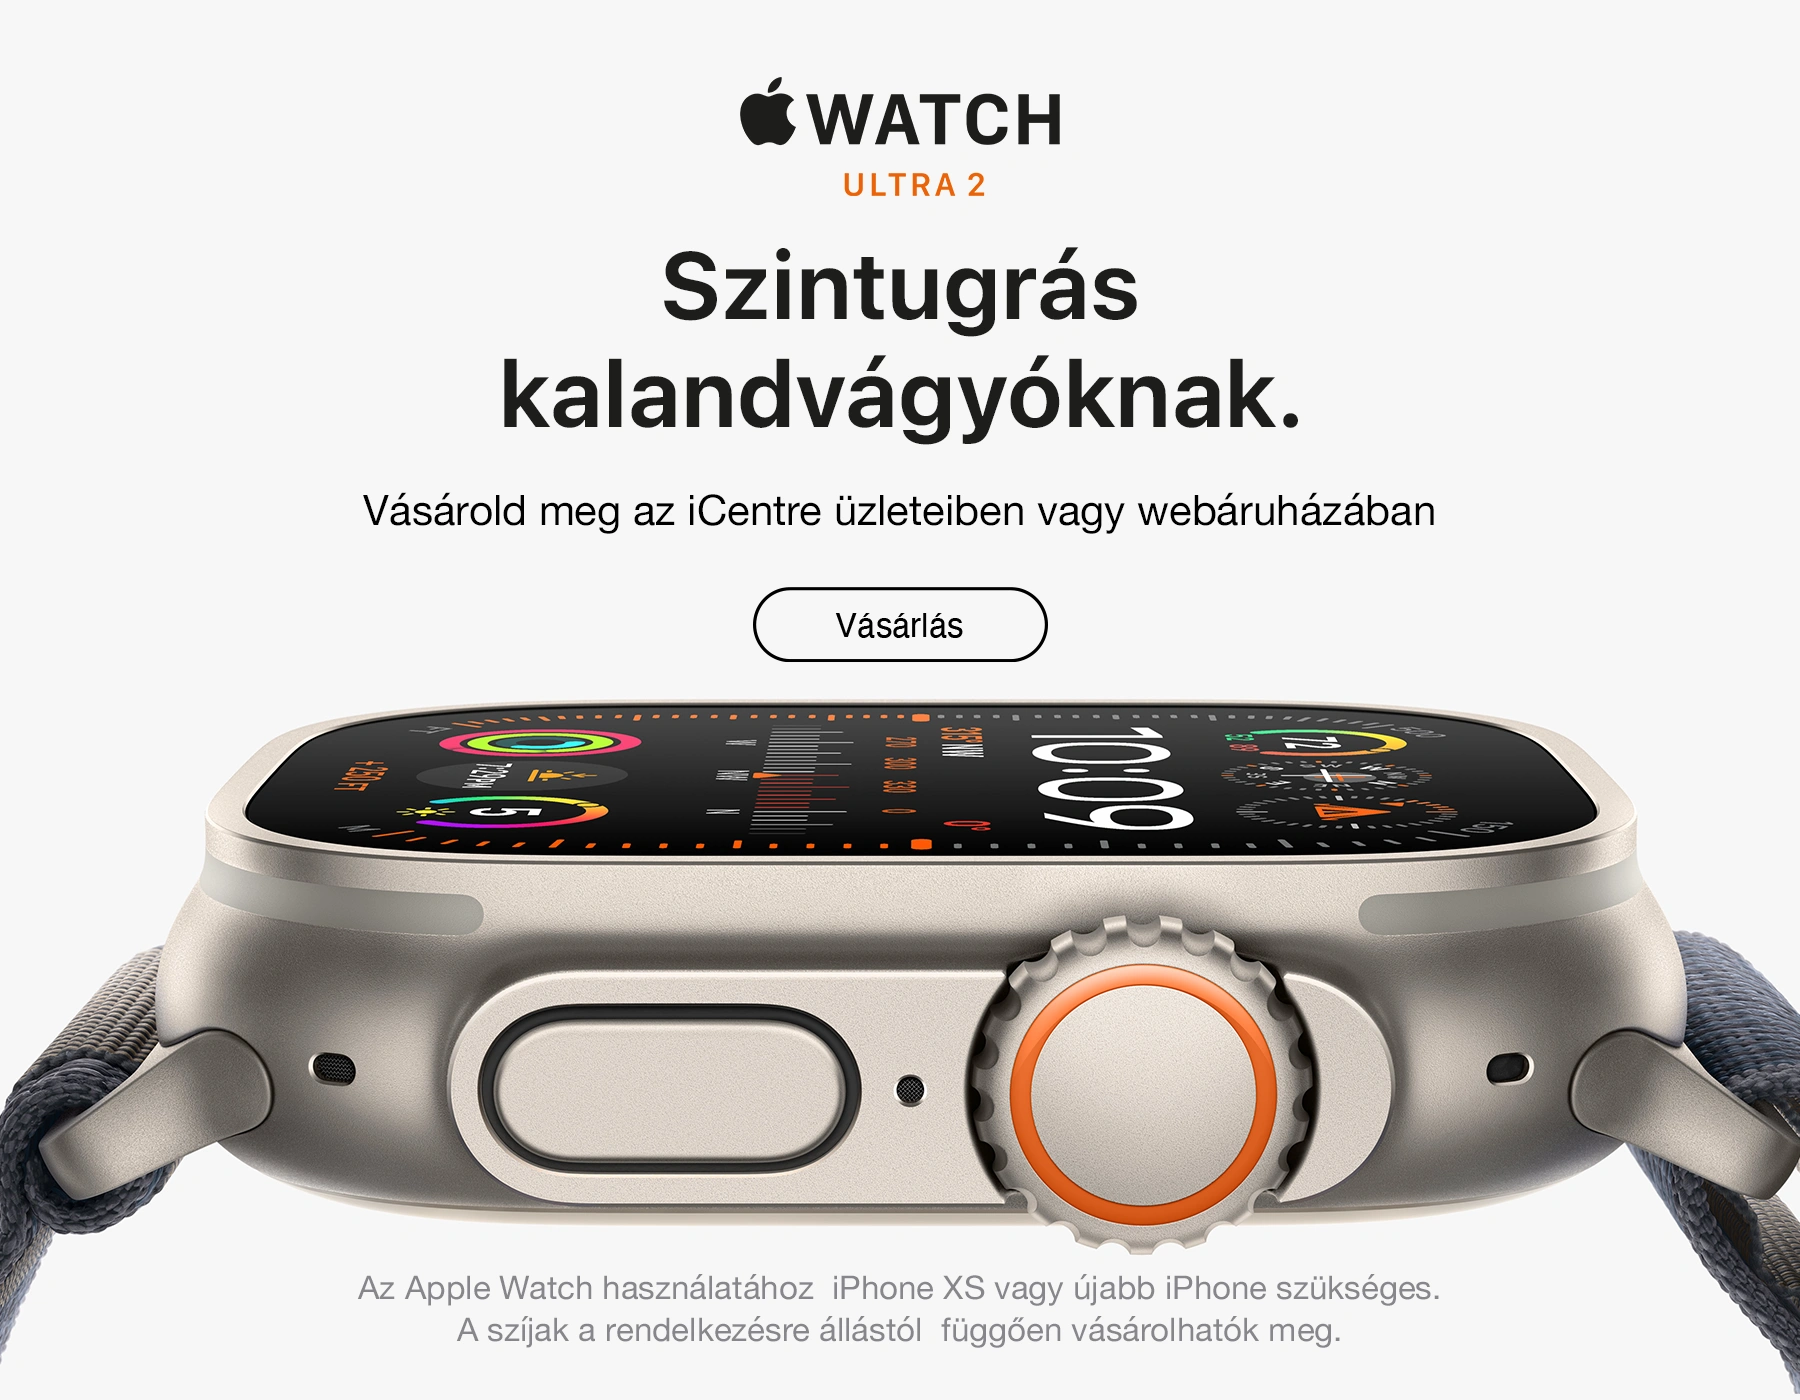 Az új Apple Watch Ultra 2 az eddigi legmasszívabb és legsokoldalúbb Apple Watch. Egy igazi szintugrás kalandvágyóknak. 